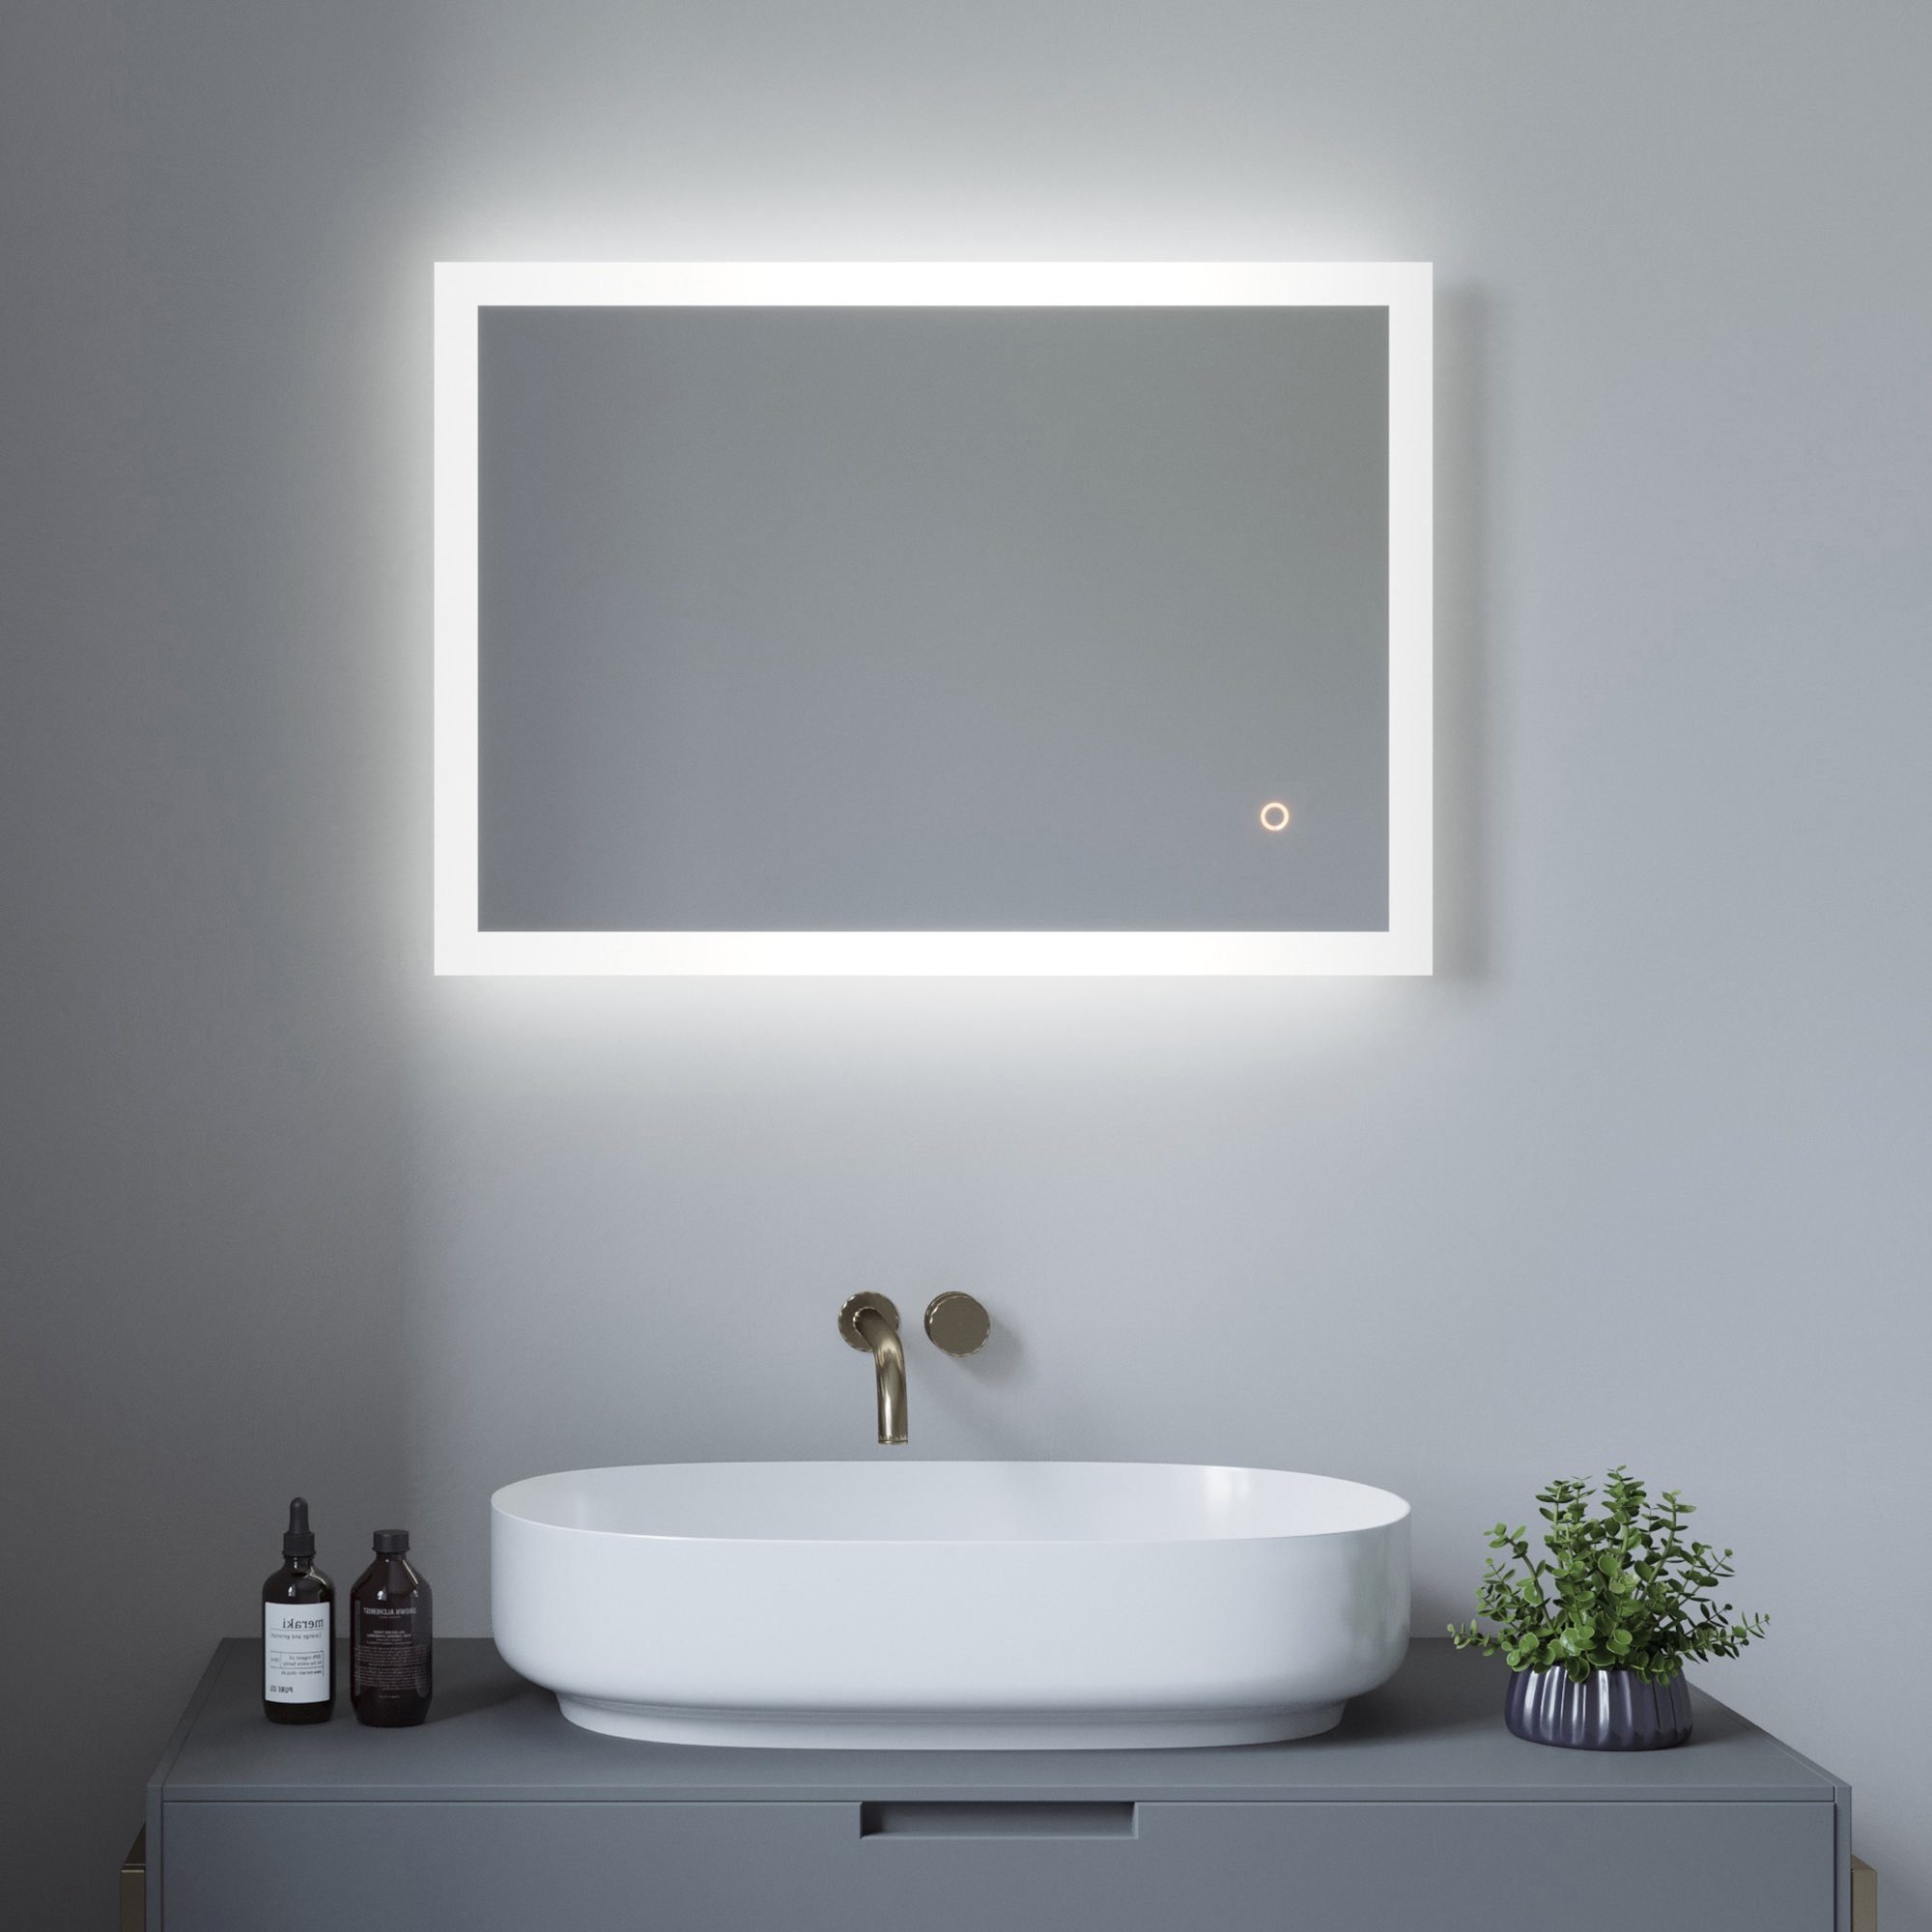 AQUALAVOS Badspiegel Led Badspiegel Touch Wandspiegel mit Beleuchtung 70x50cm Kaltweiß IP44, Touch-Schalter Dimmbar, Horizontale / vertikal Aufhängung